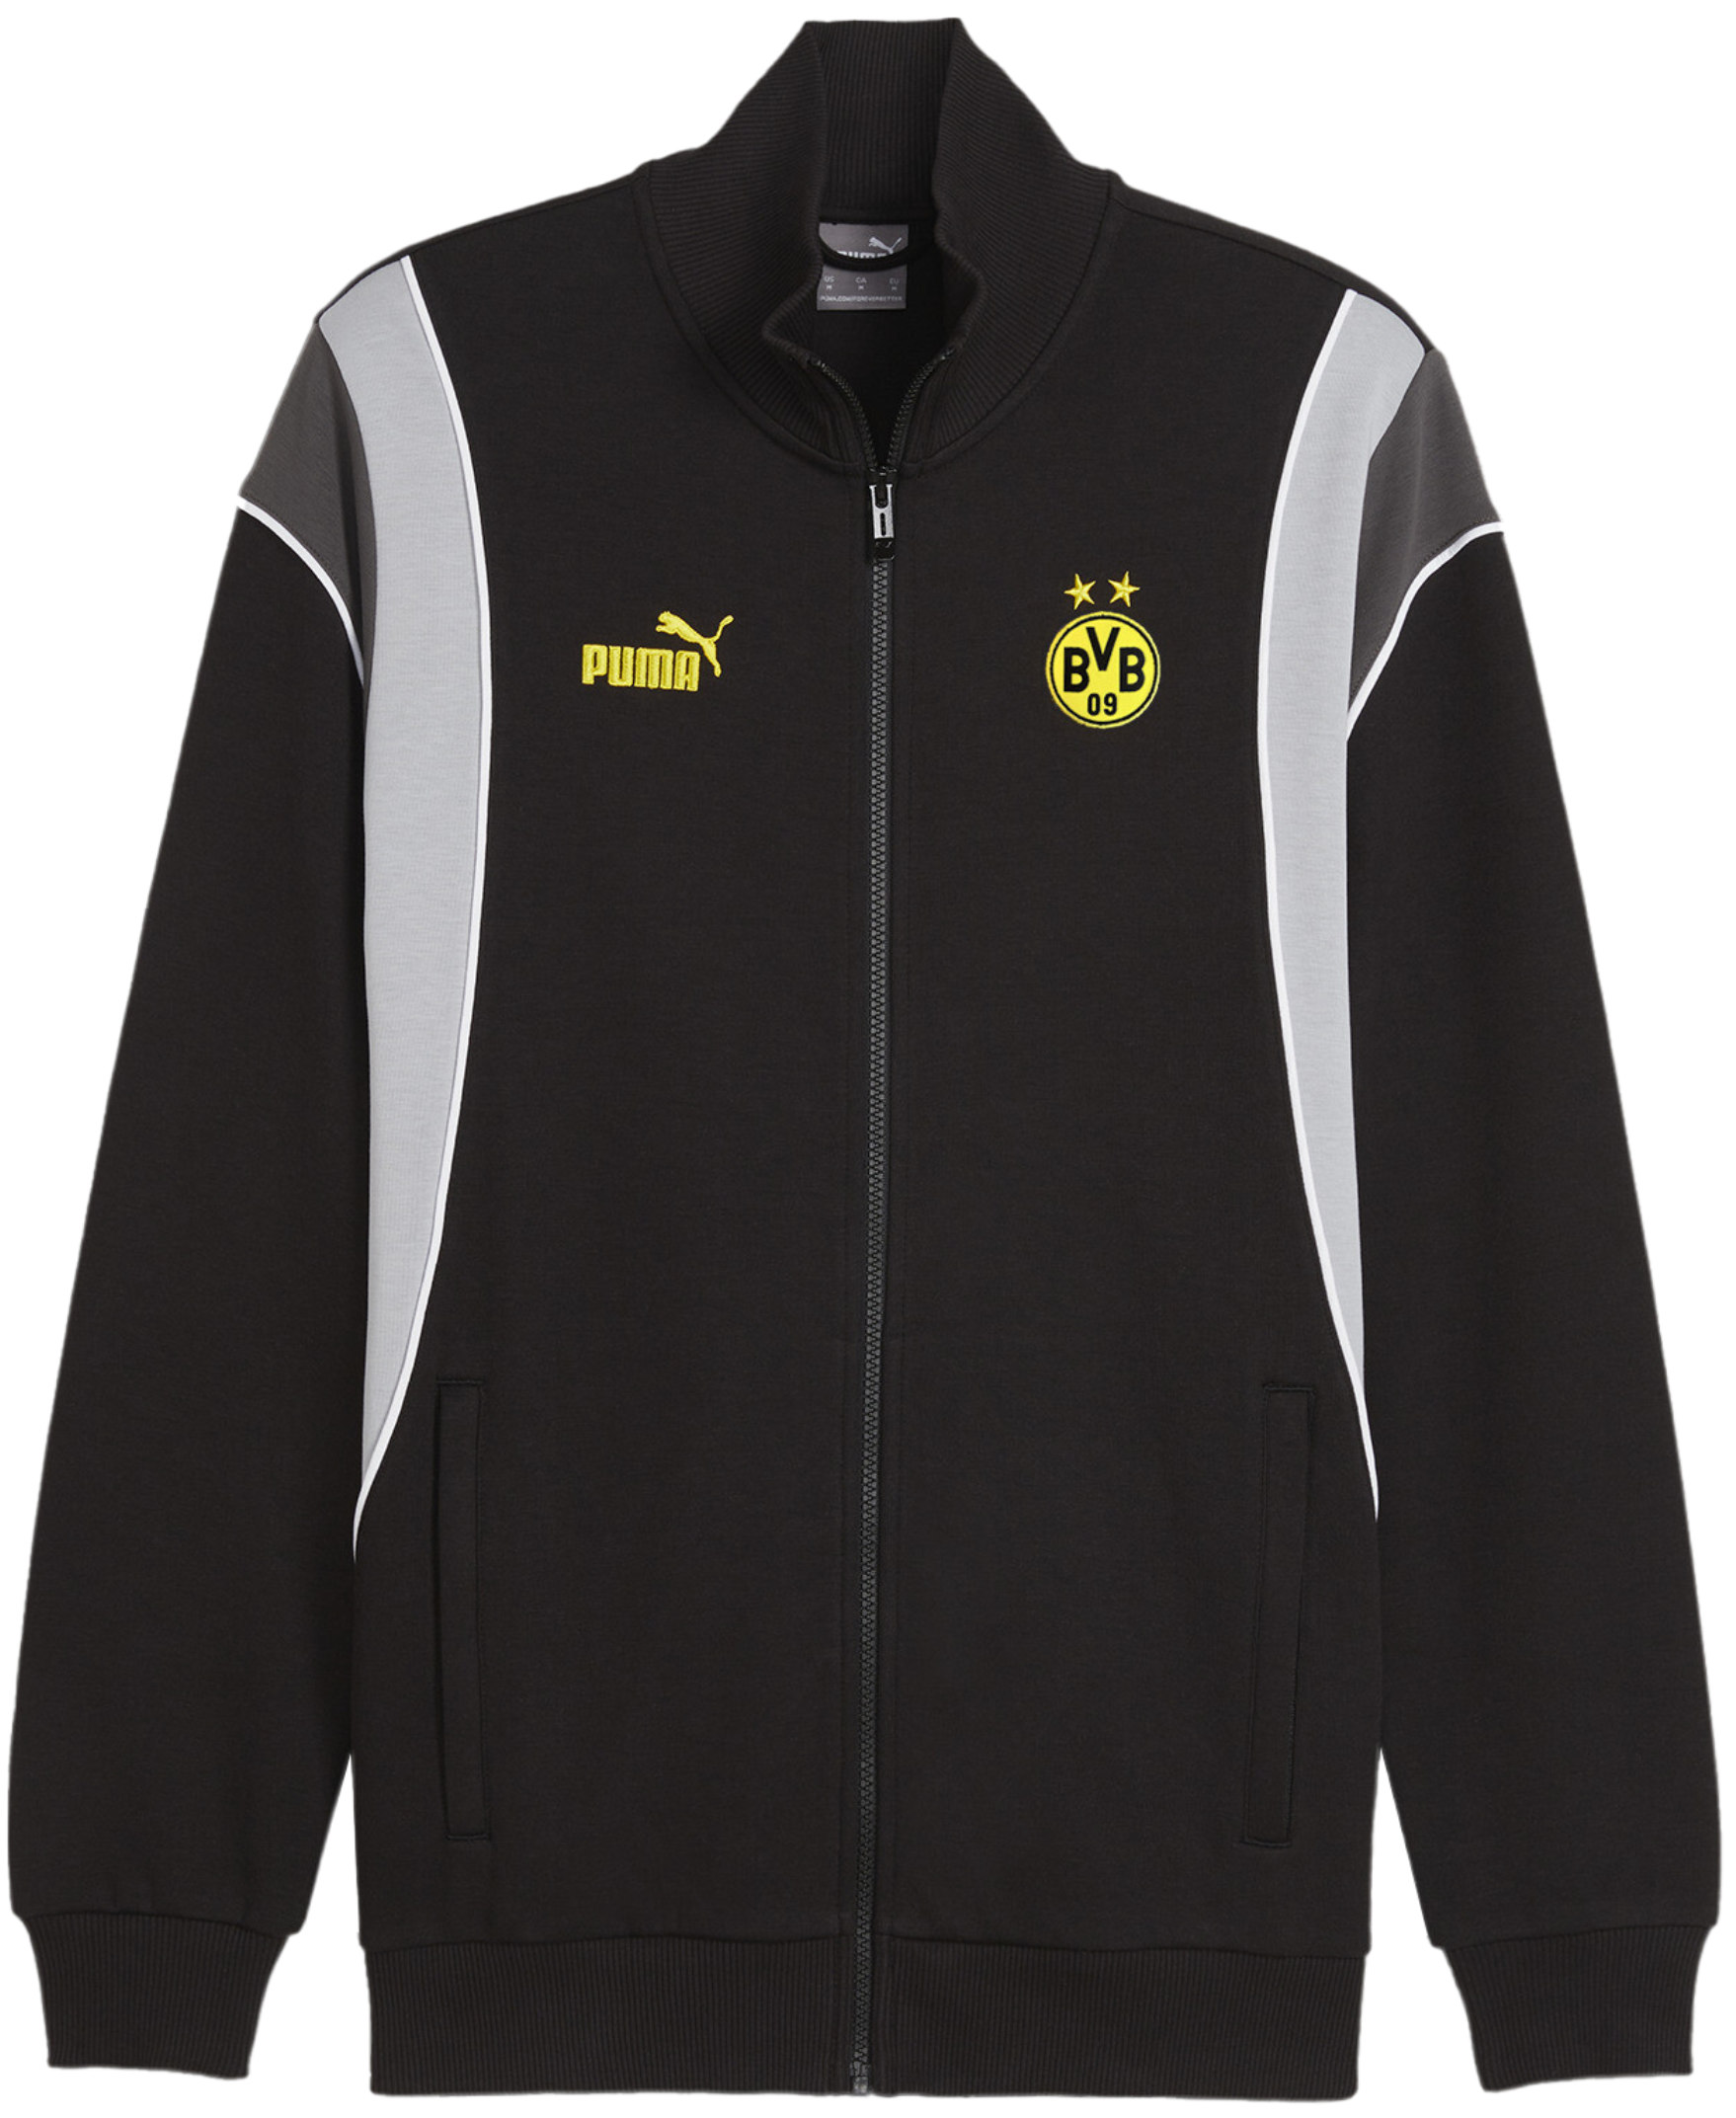 Pánská tréninková bunda Puma BVB Dortmund Ftbl Archive